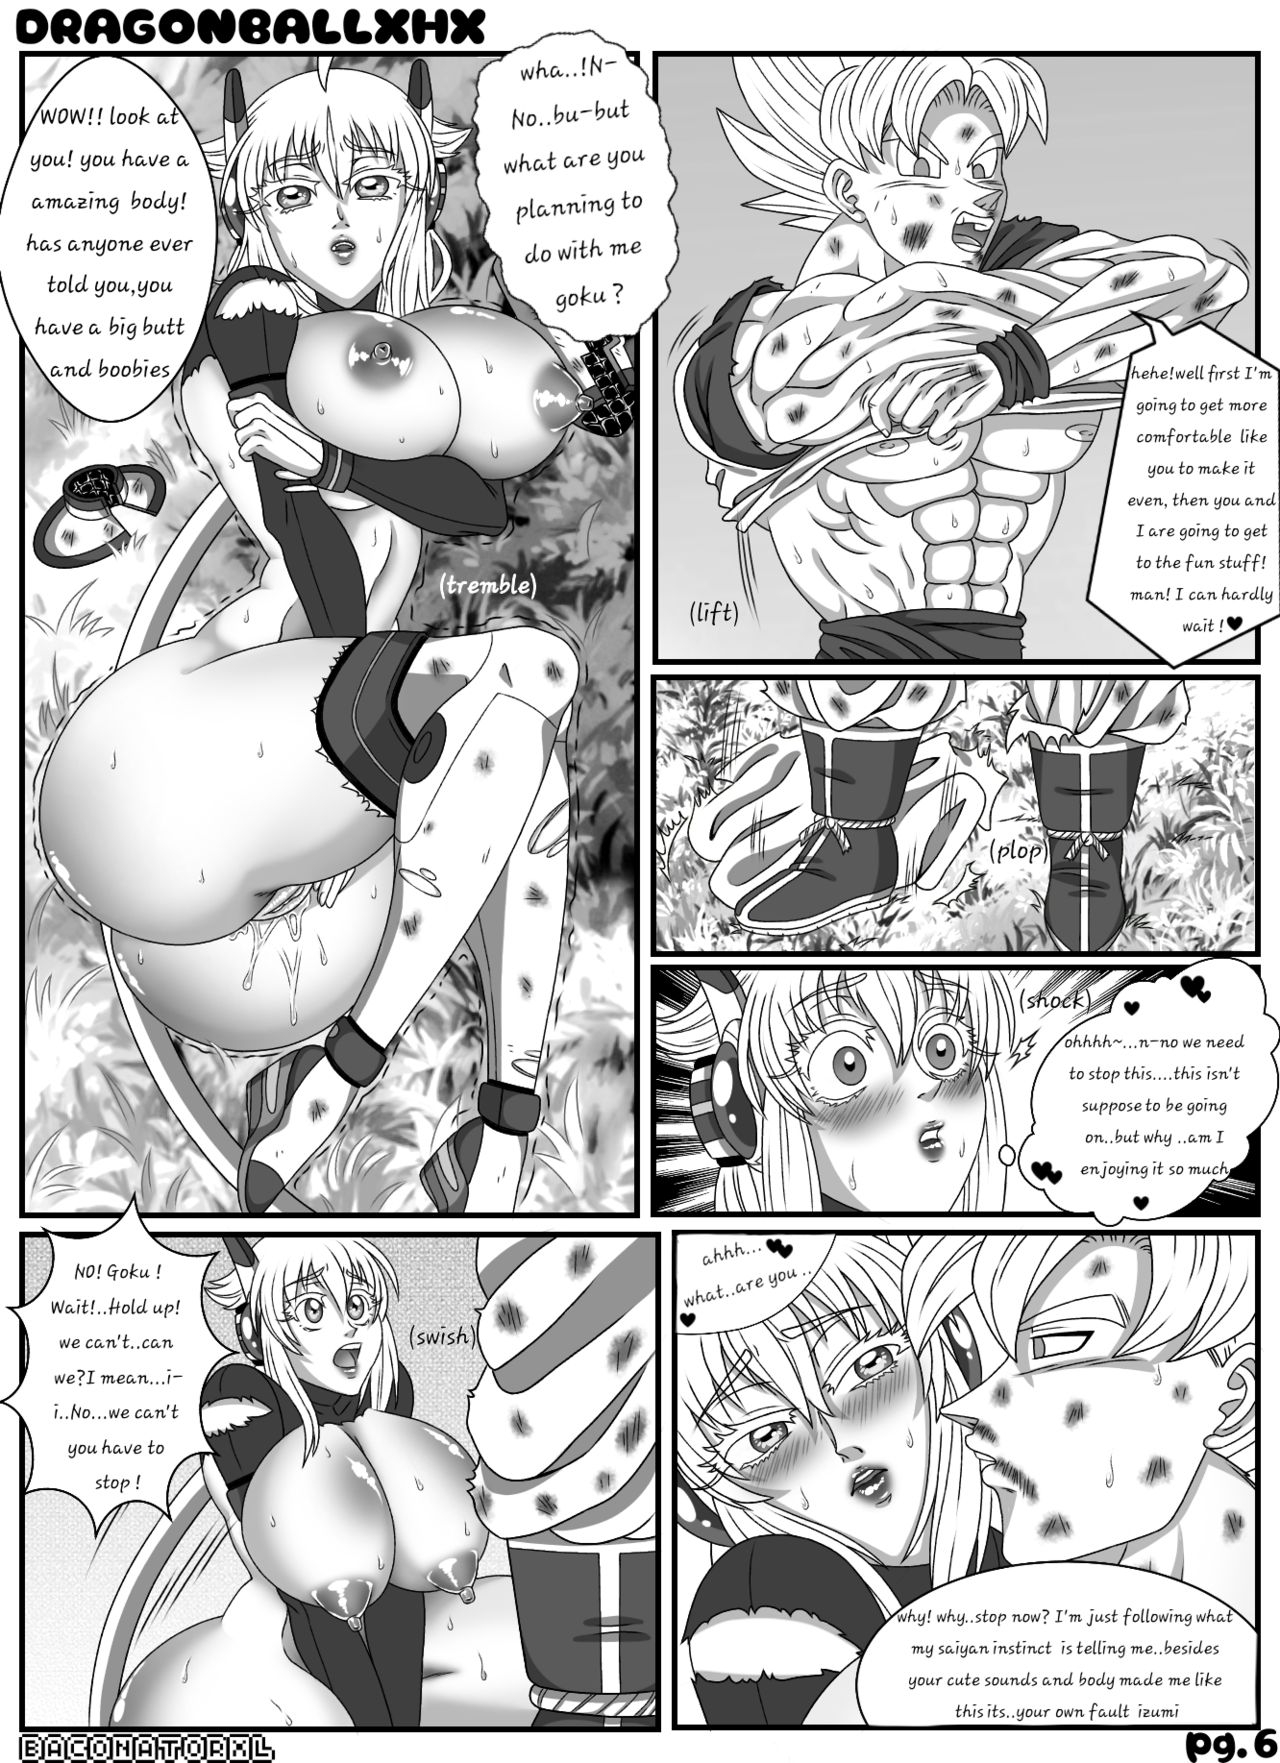 Dragon Ball Z XHX(fan fiction parody) [ongoing](English) 7